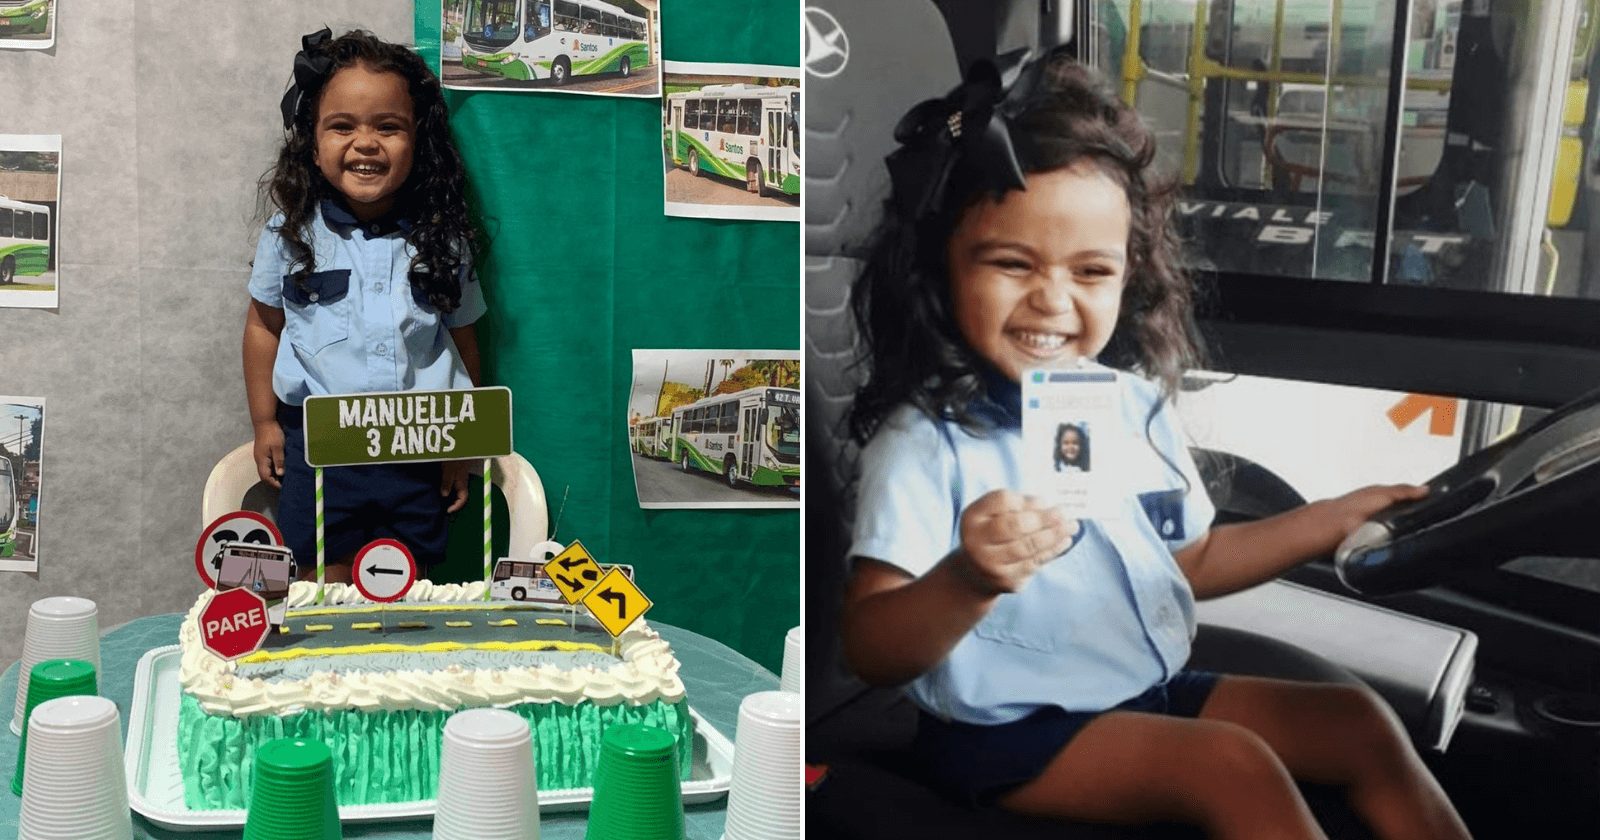 Motoristas montam festa temática e realizam desejo de menina de 3 anos de ser uma deles